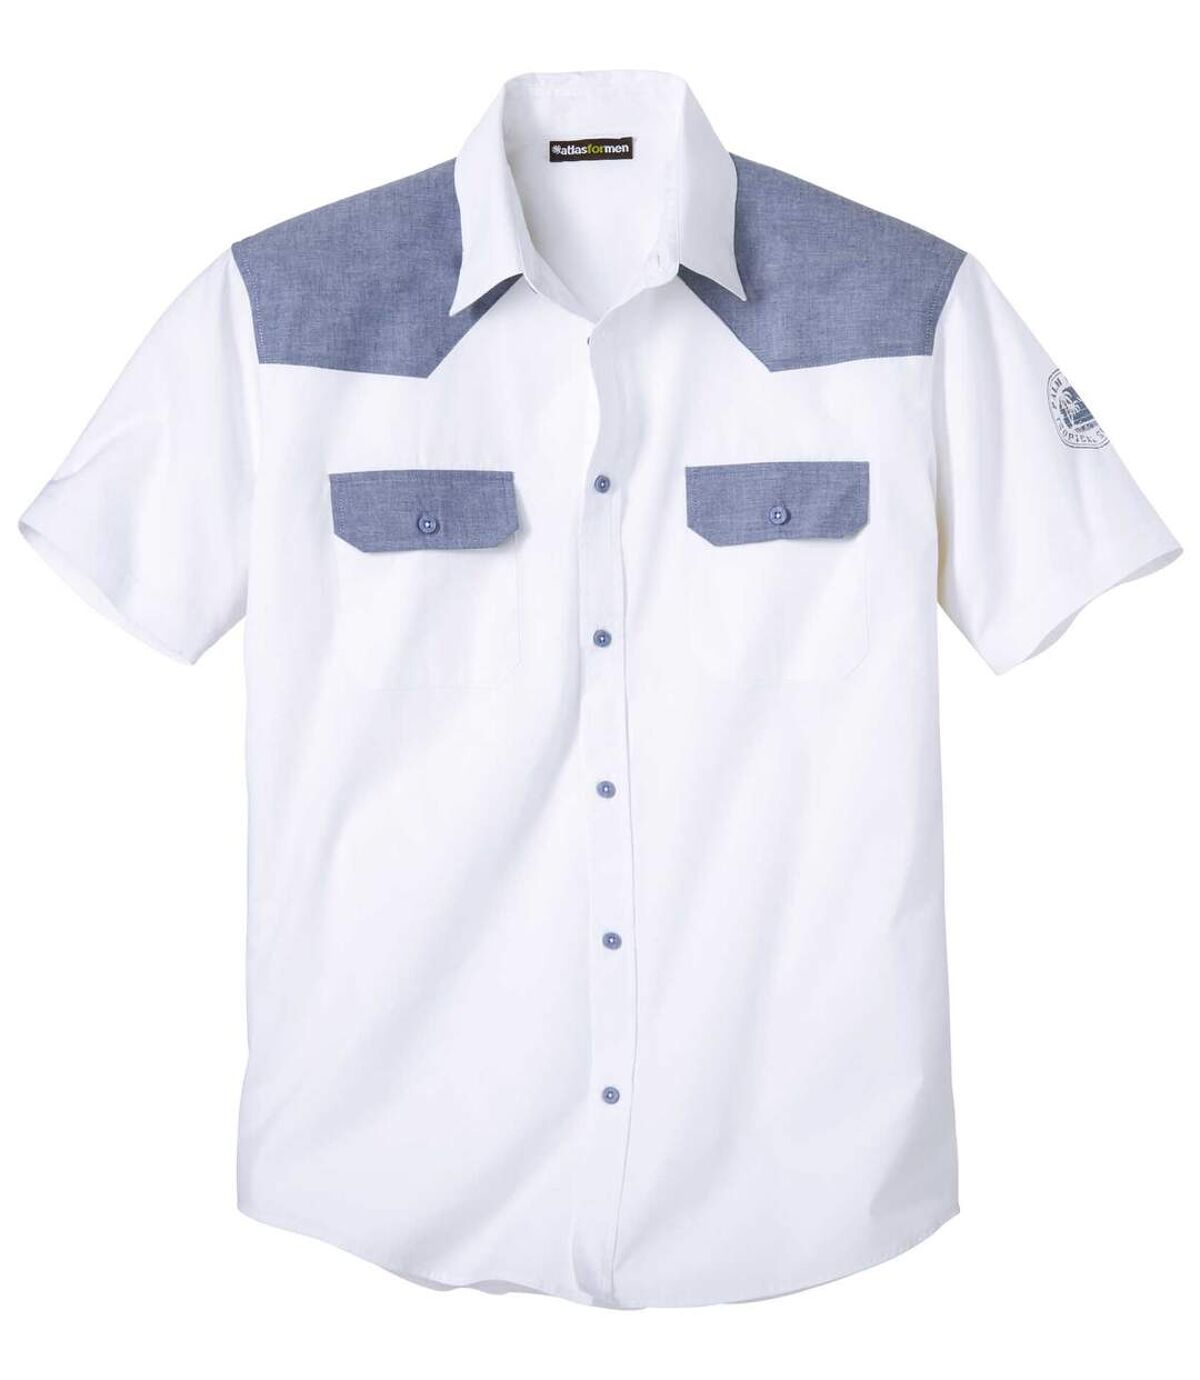 Biała koszula z popeliny Palm Coast Atlas For Men